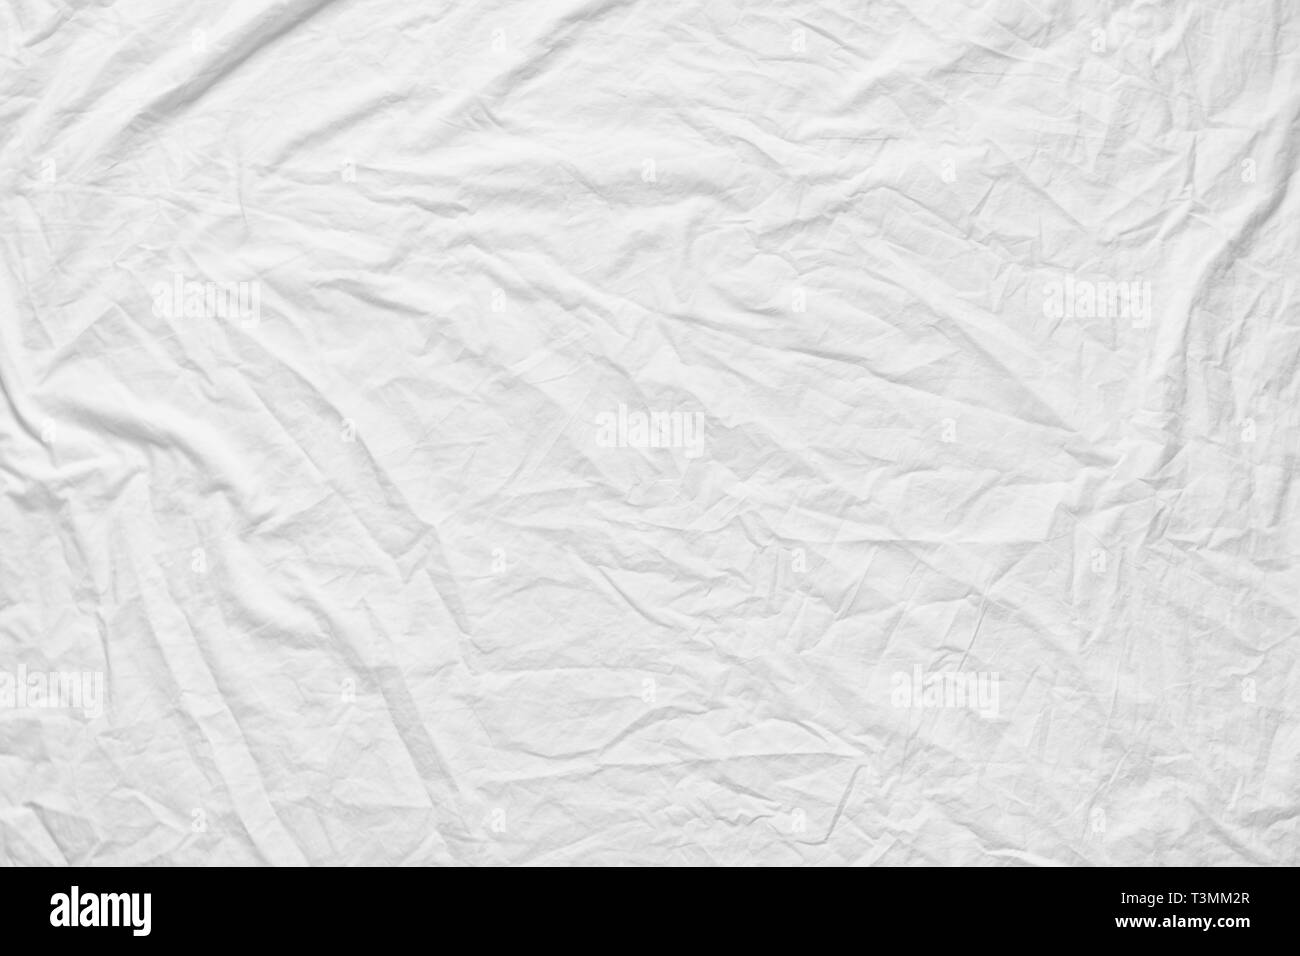 Weiß fabic Textur zerknittert Textur, Soft Focus weiße fabic von Betten Blatt zerknüllt sie uns Hintergrund Stockfoto